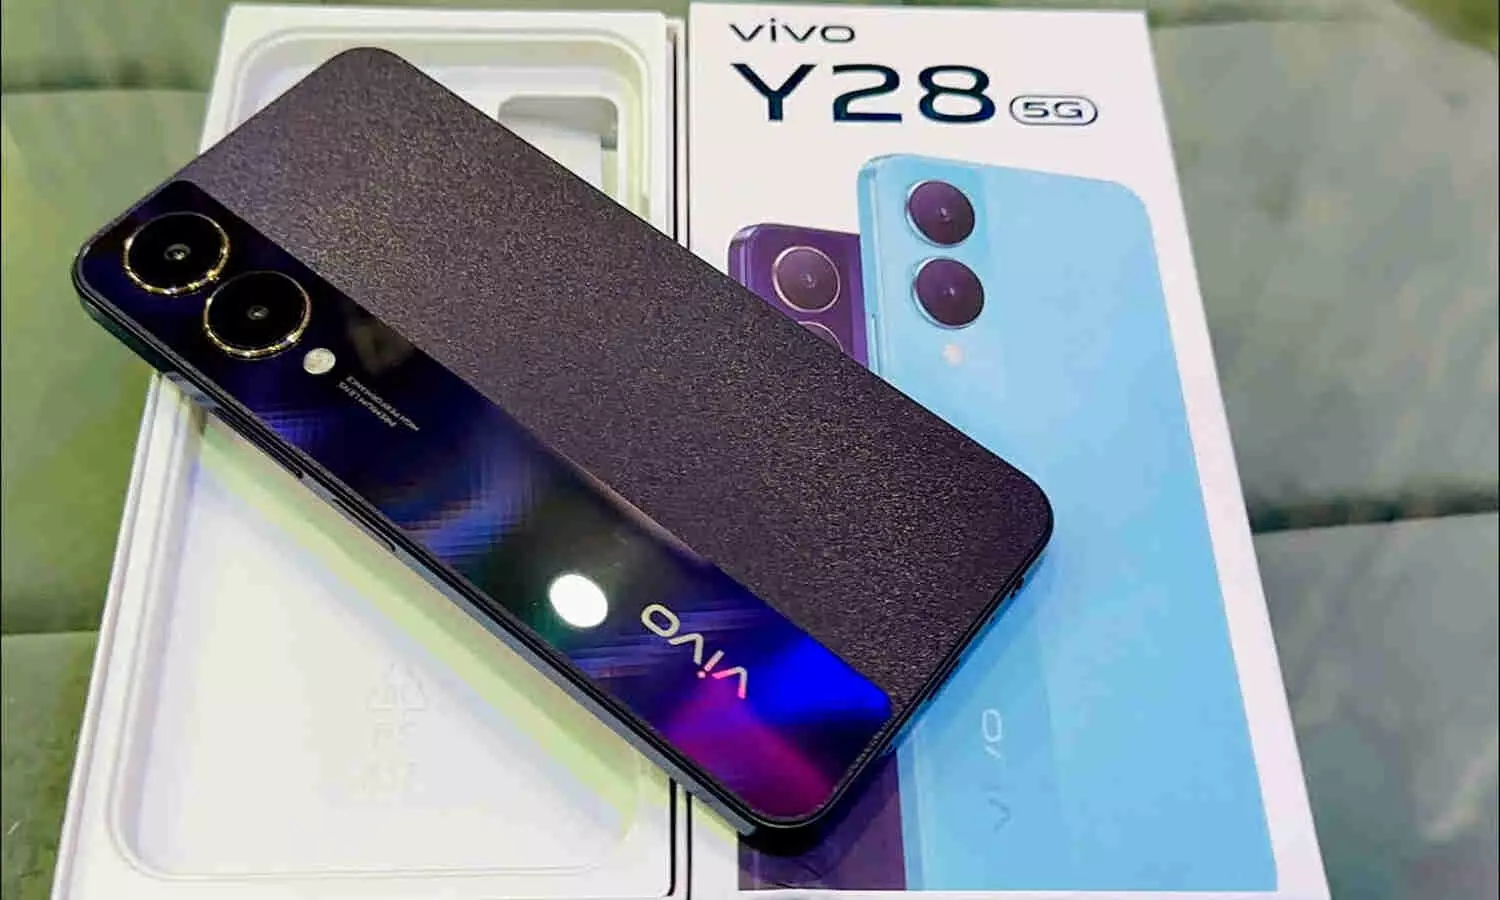 Vivo Y28 5G: Vivo ने लॉन्च किया Y28 5G  स्मार्टफोन, सेल्फी और वीडियो कॉलिंग के लिए 8MP कैमरा सेंसर जैसी कई खास खूबियों से  होगा लैस